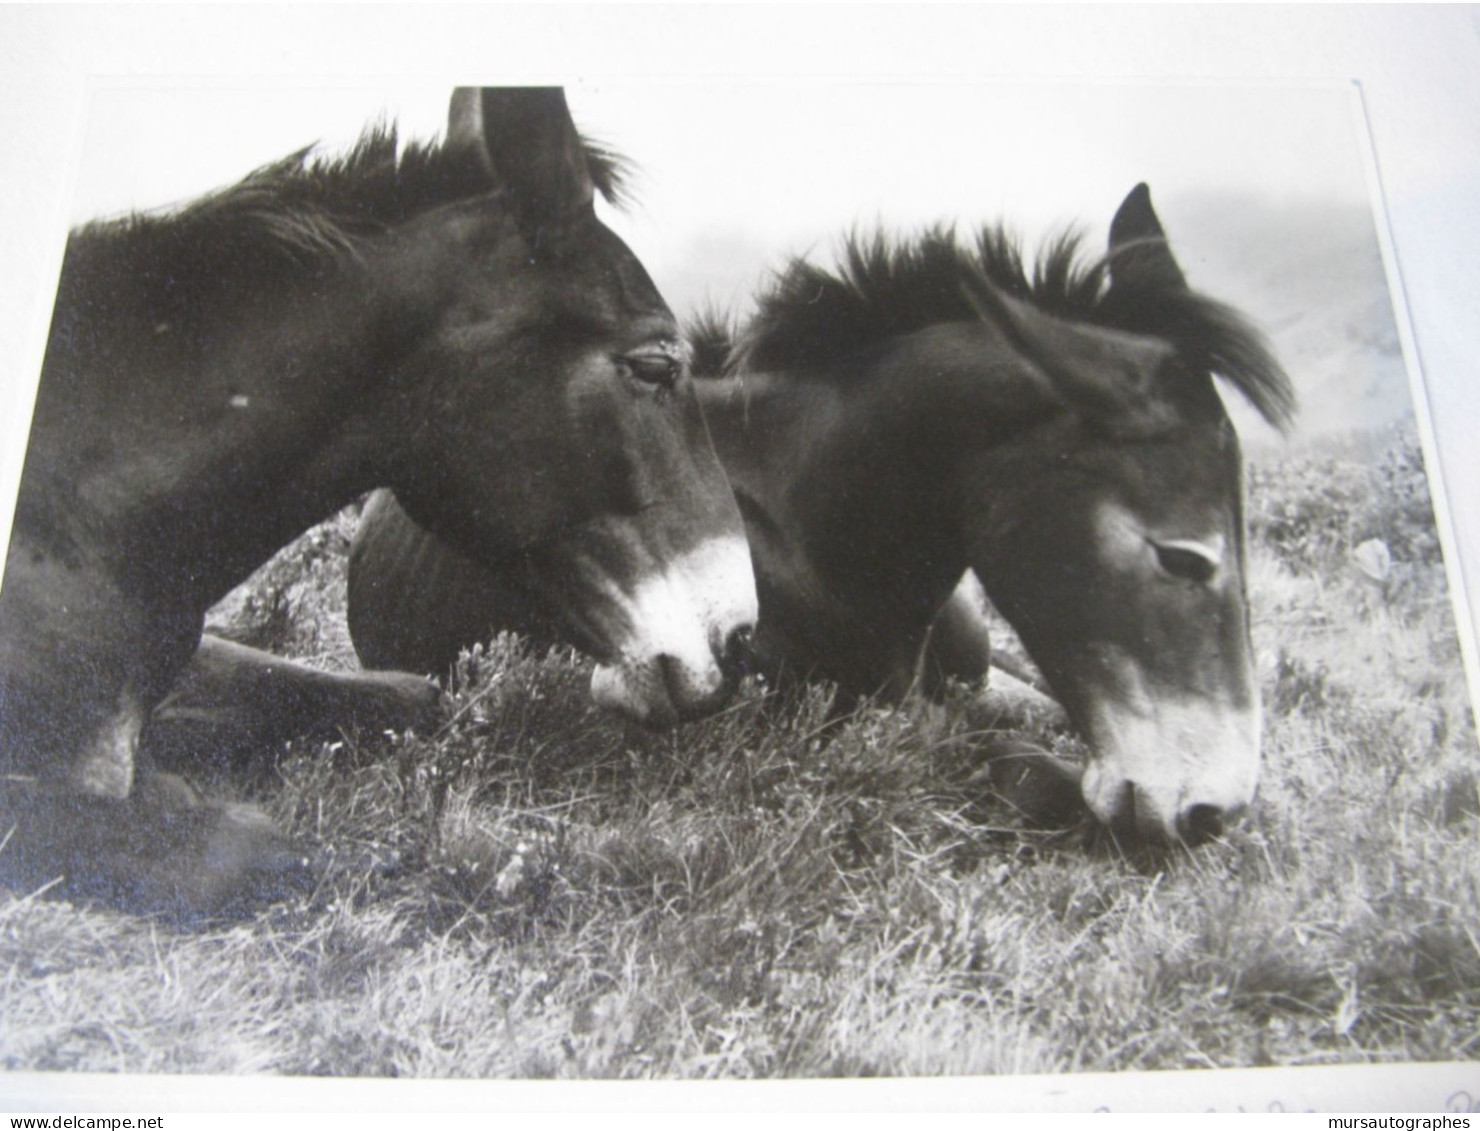 BELLE PHOTOGRAPHIE N&B "DEUX MULETS" Vers 1940-50 Signé ANNELIES MANN - Signed Photographs